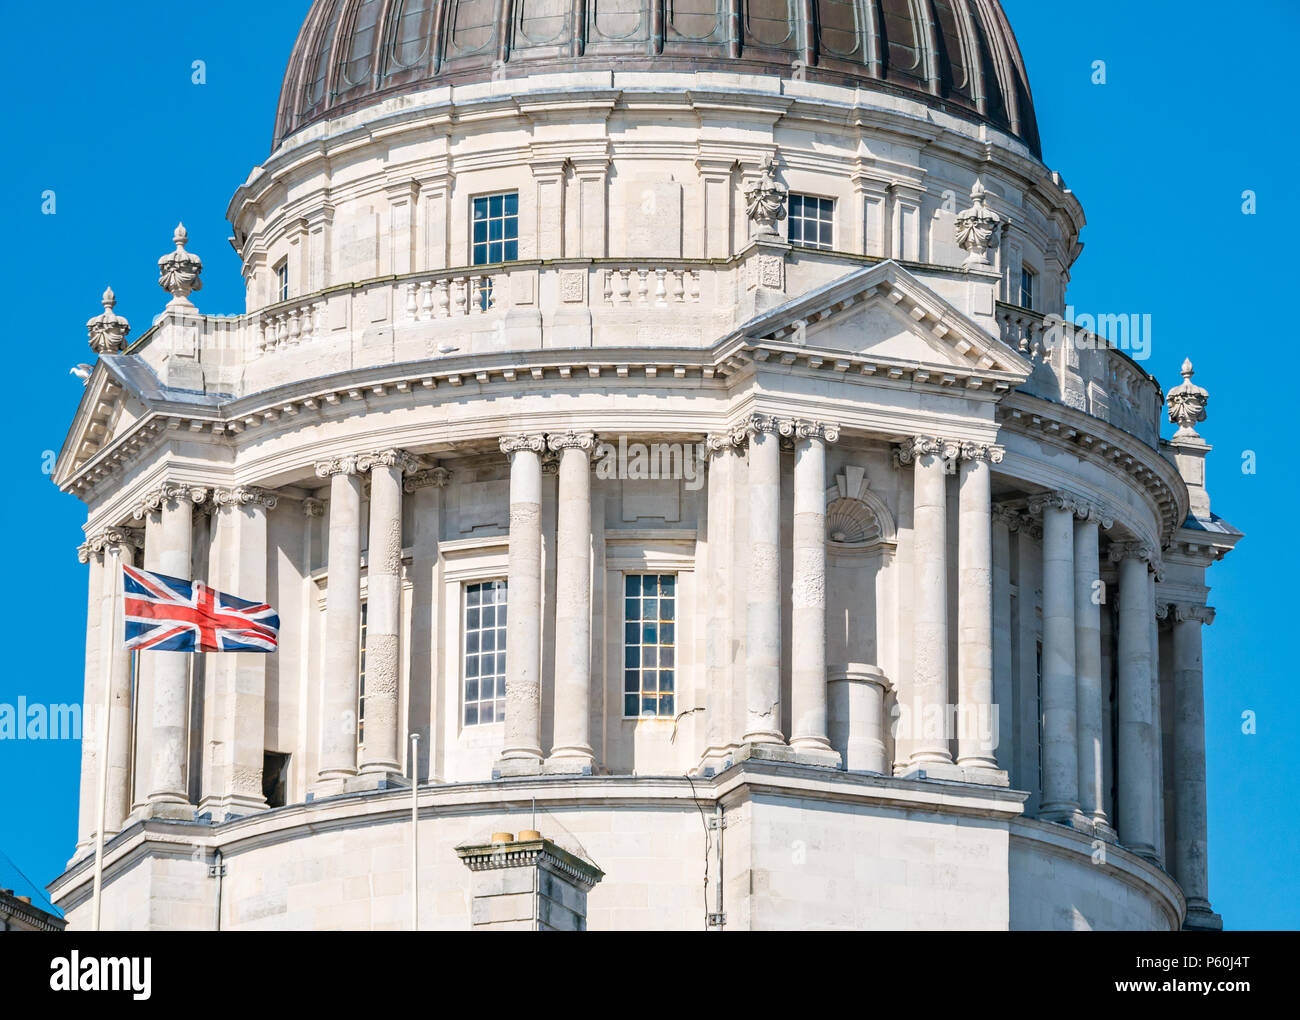 Nahaufnahme der Kuppel des Gebäudes im Stil des Edwardian Baroque in Liverpool mit der Flagge von Union Jack und blauem Himmel Stockfoto